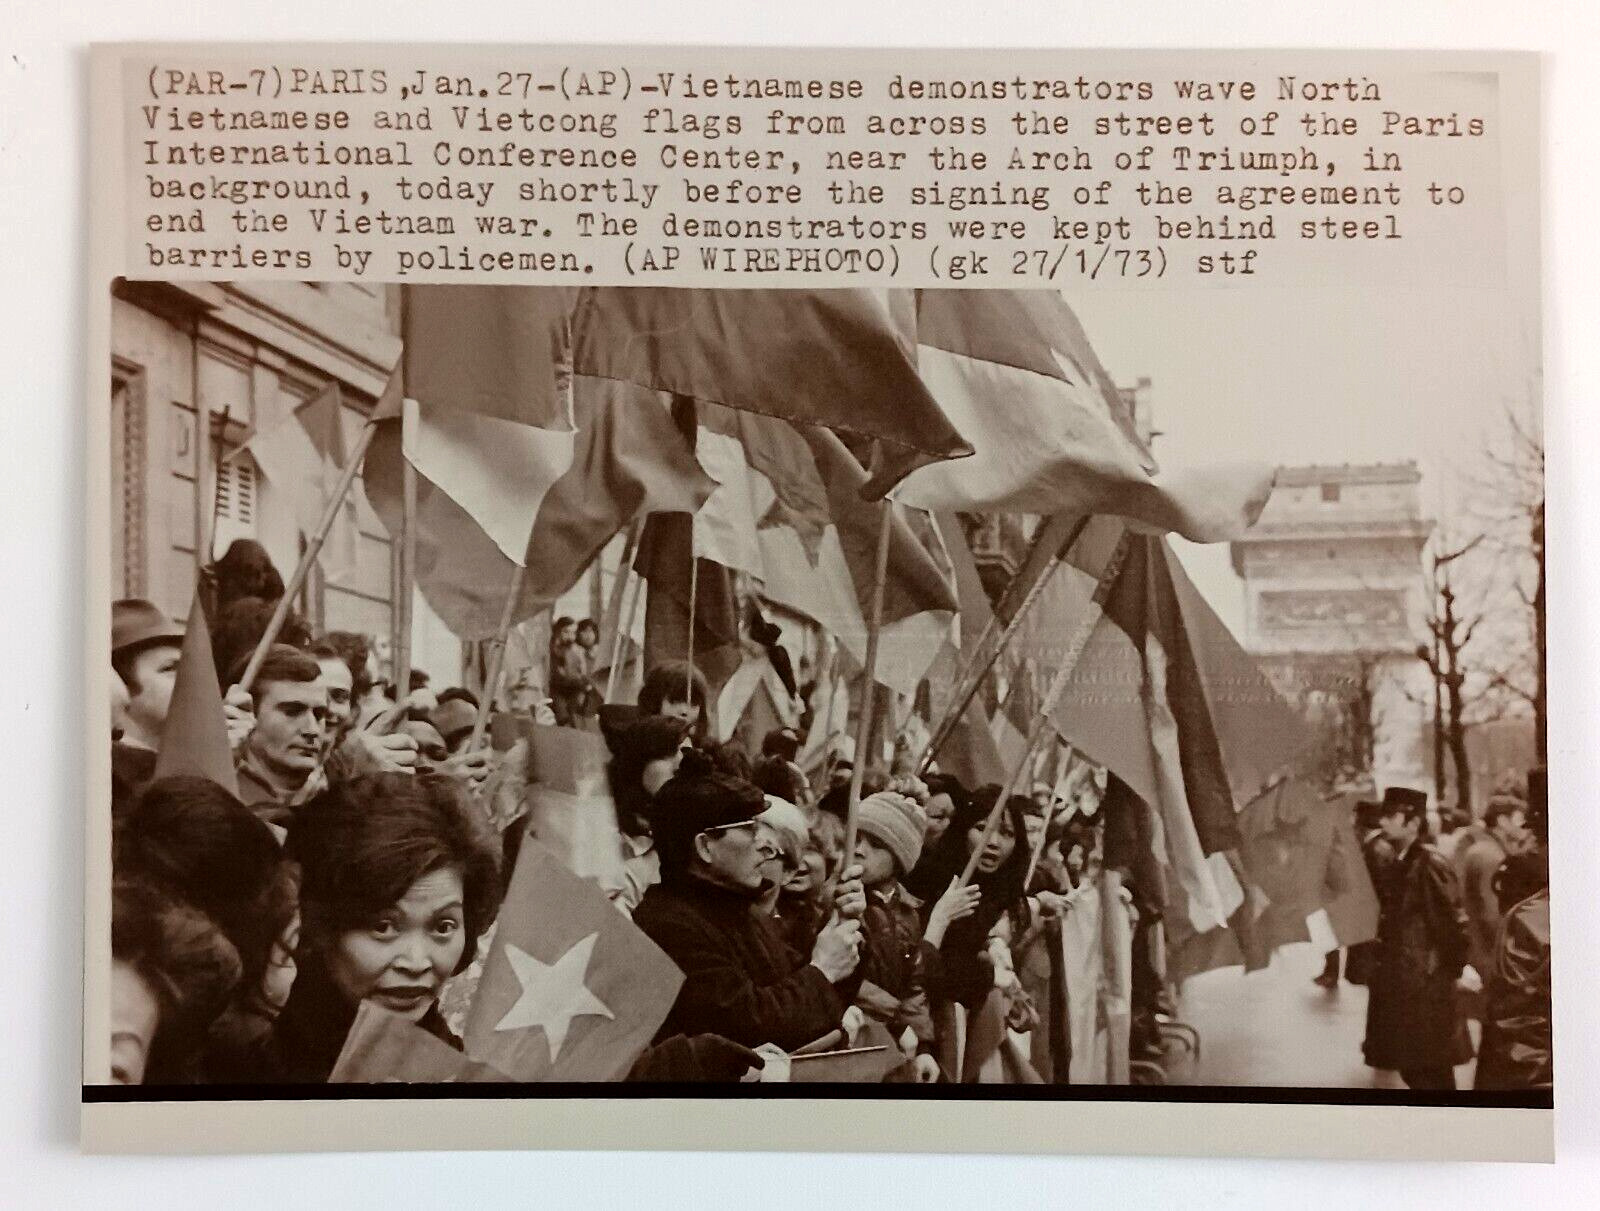 1973 Paris France Vietnamese Vietnam War Protestors Vietcong Press Wire Photo